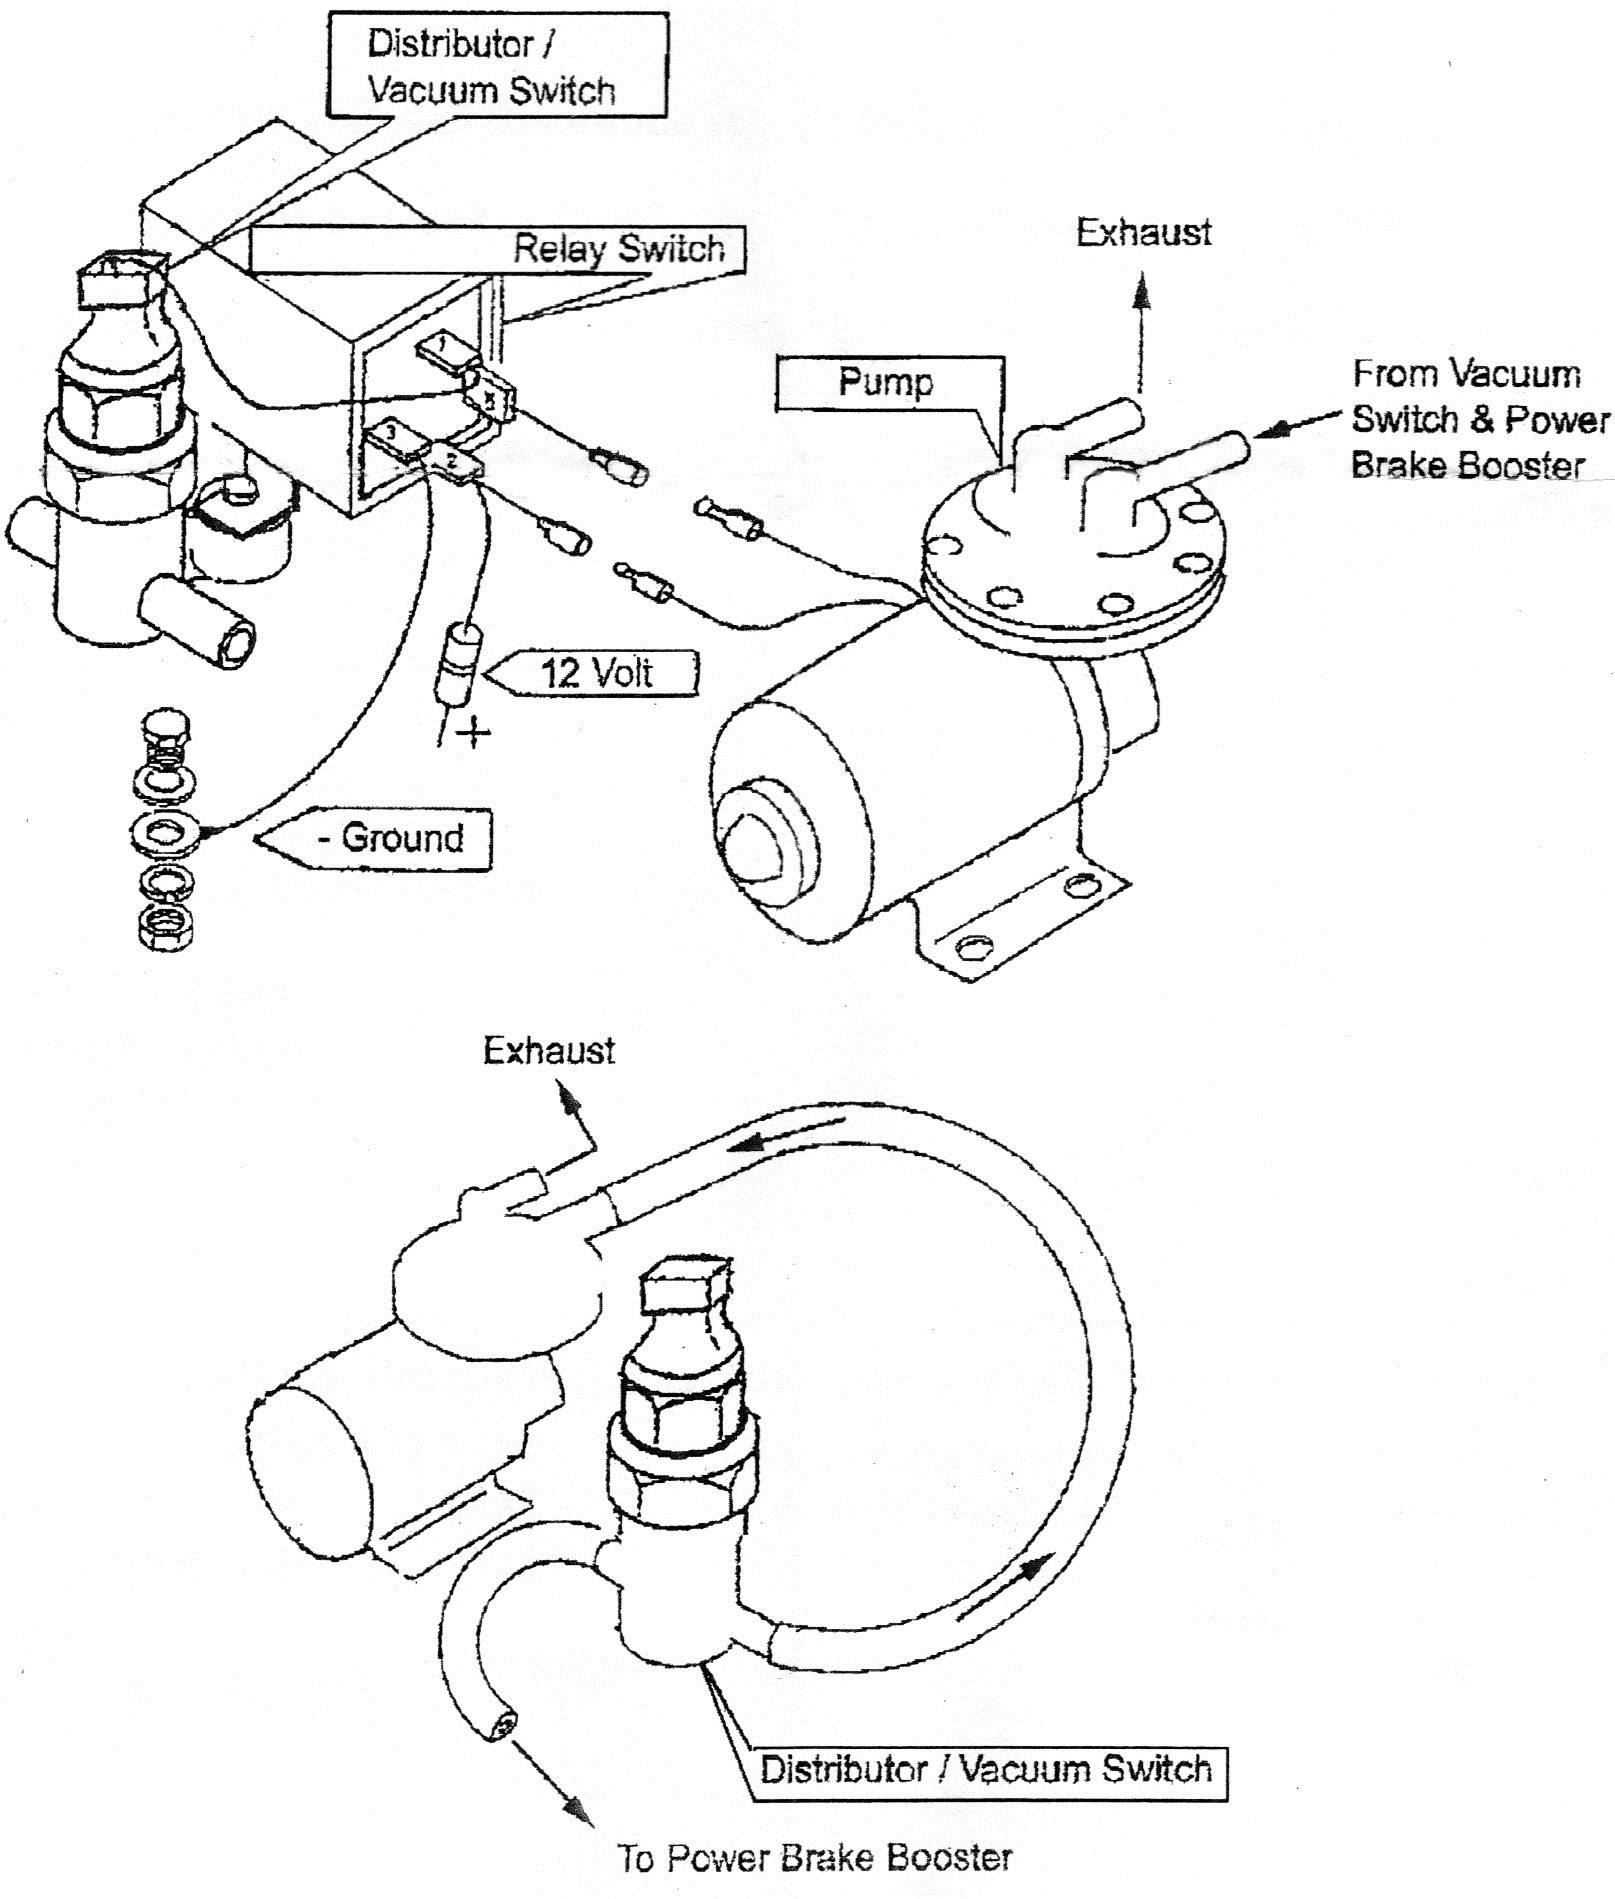 Vacuum Brake Booster Diagram Electric Vacuum Pump Car Builder solutions Kit Car Parts and Of Vacuum Brake Booster Diagram